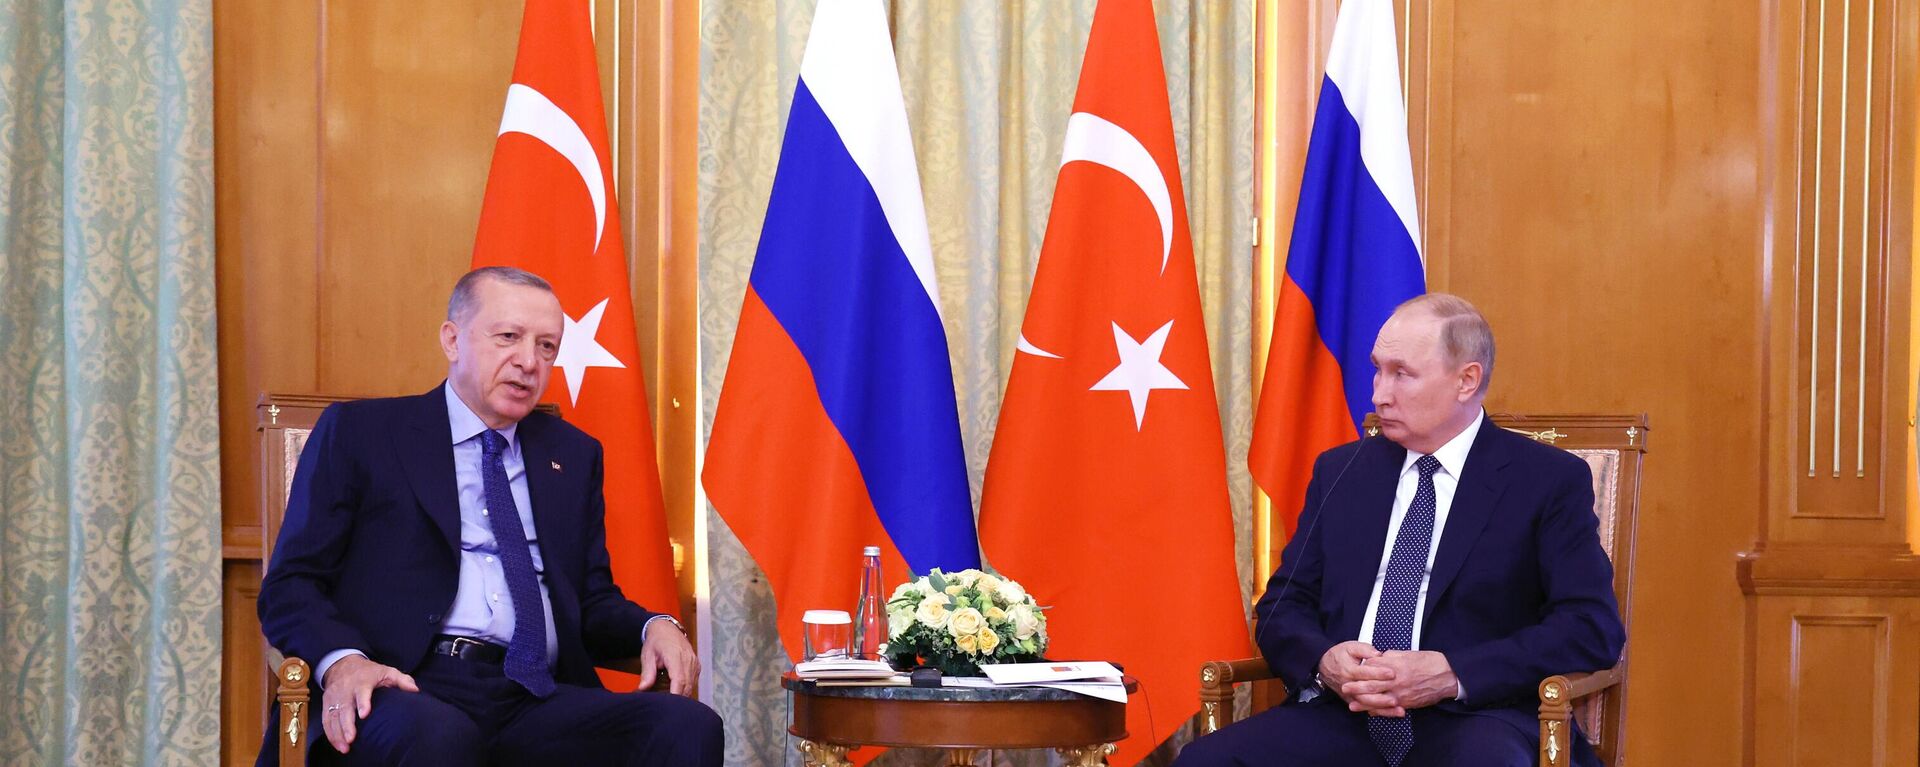 O presidente da Turquia, Recep Tayyip Erdogan (à esquerda), e o presidente russo, Vladimir Putin, durante encontro em Sochi, Rússia, 5 de agosto de 2022 - Sputnik Brasil, 1920, 05.08.2022